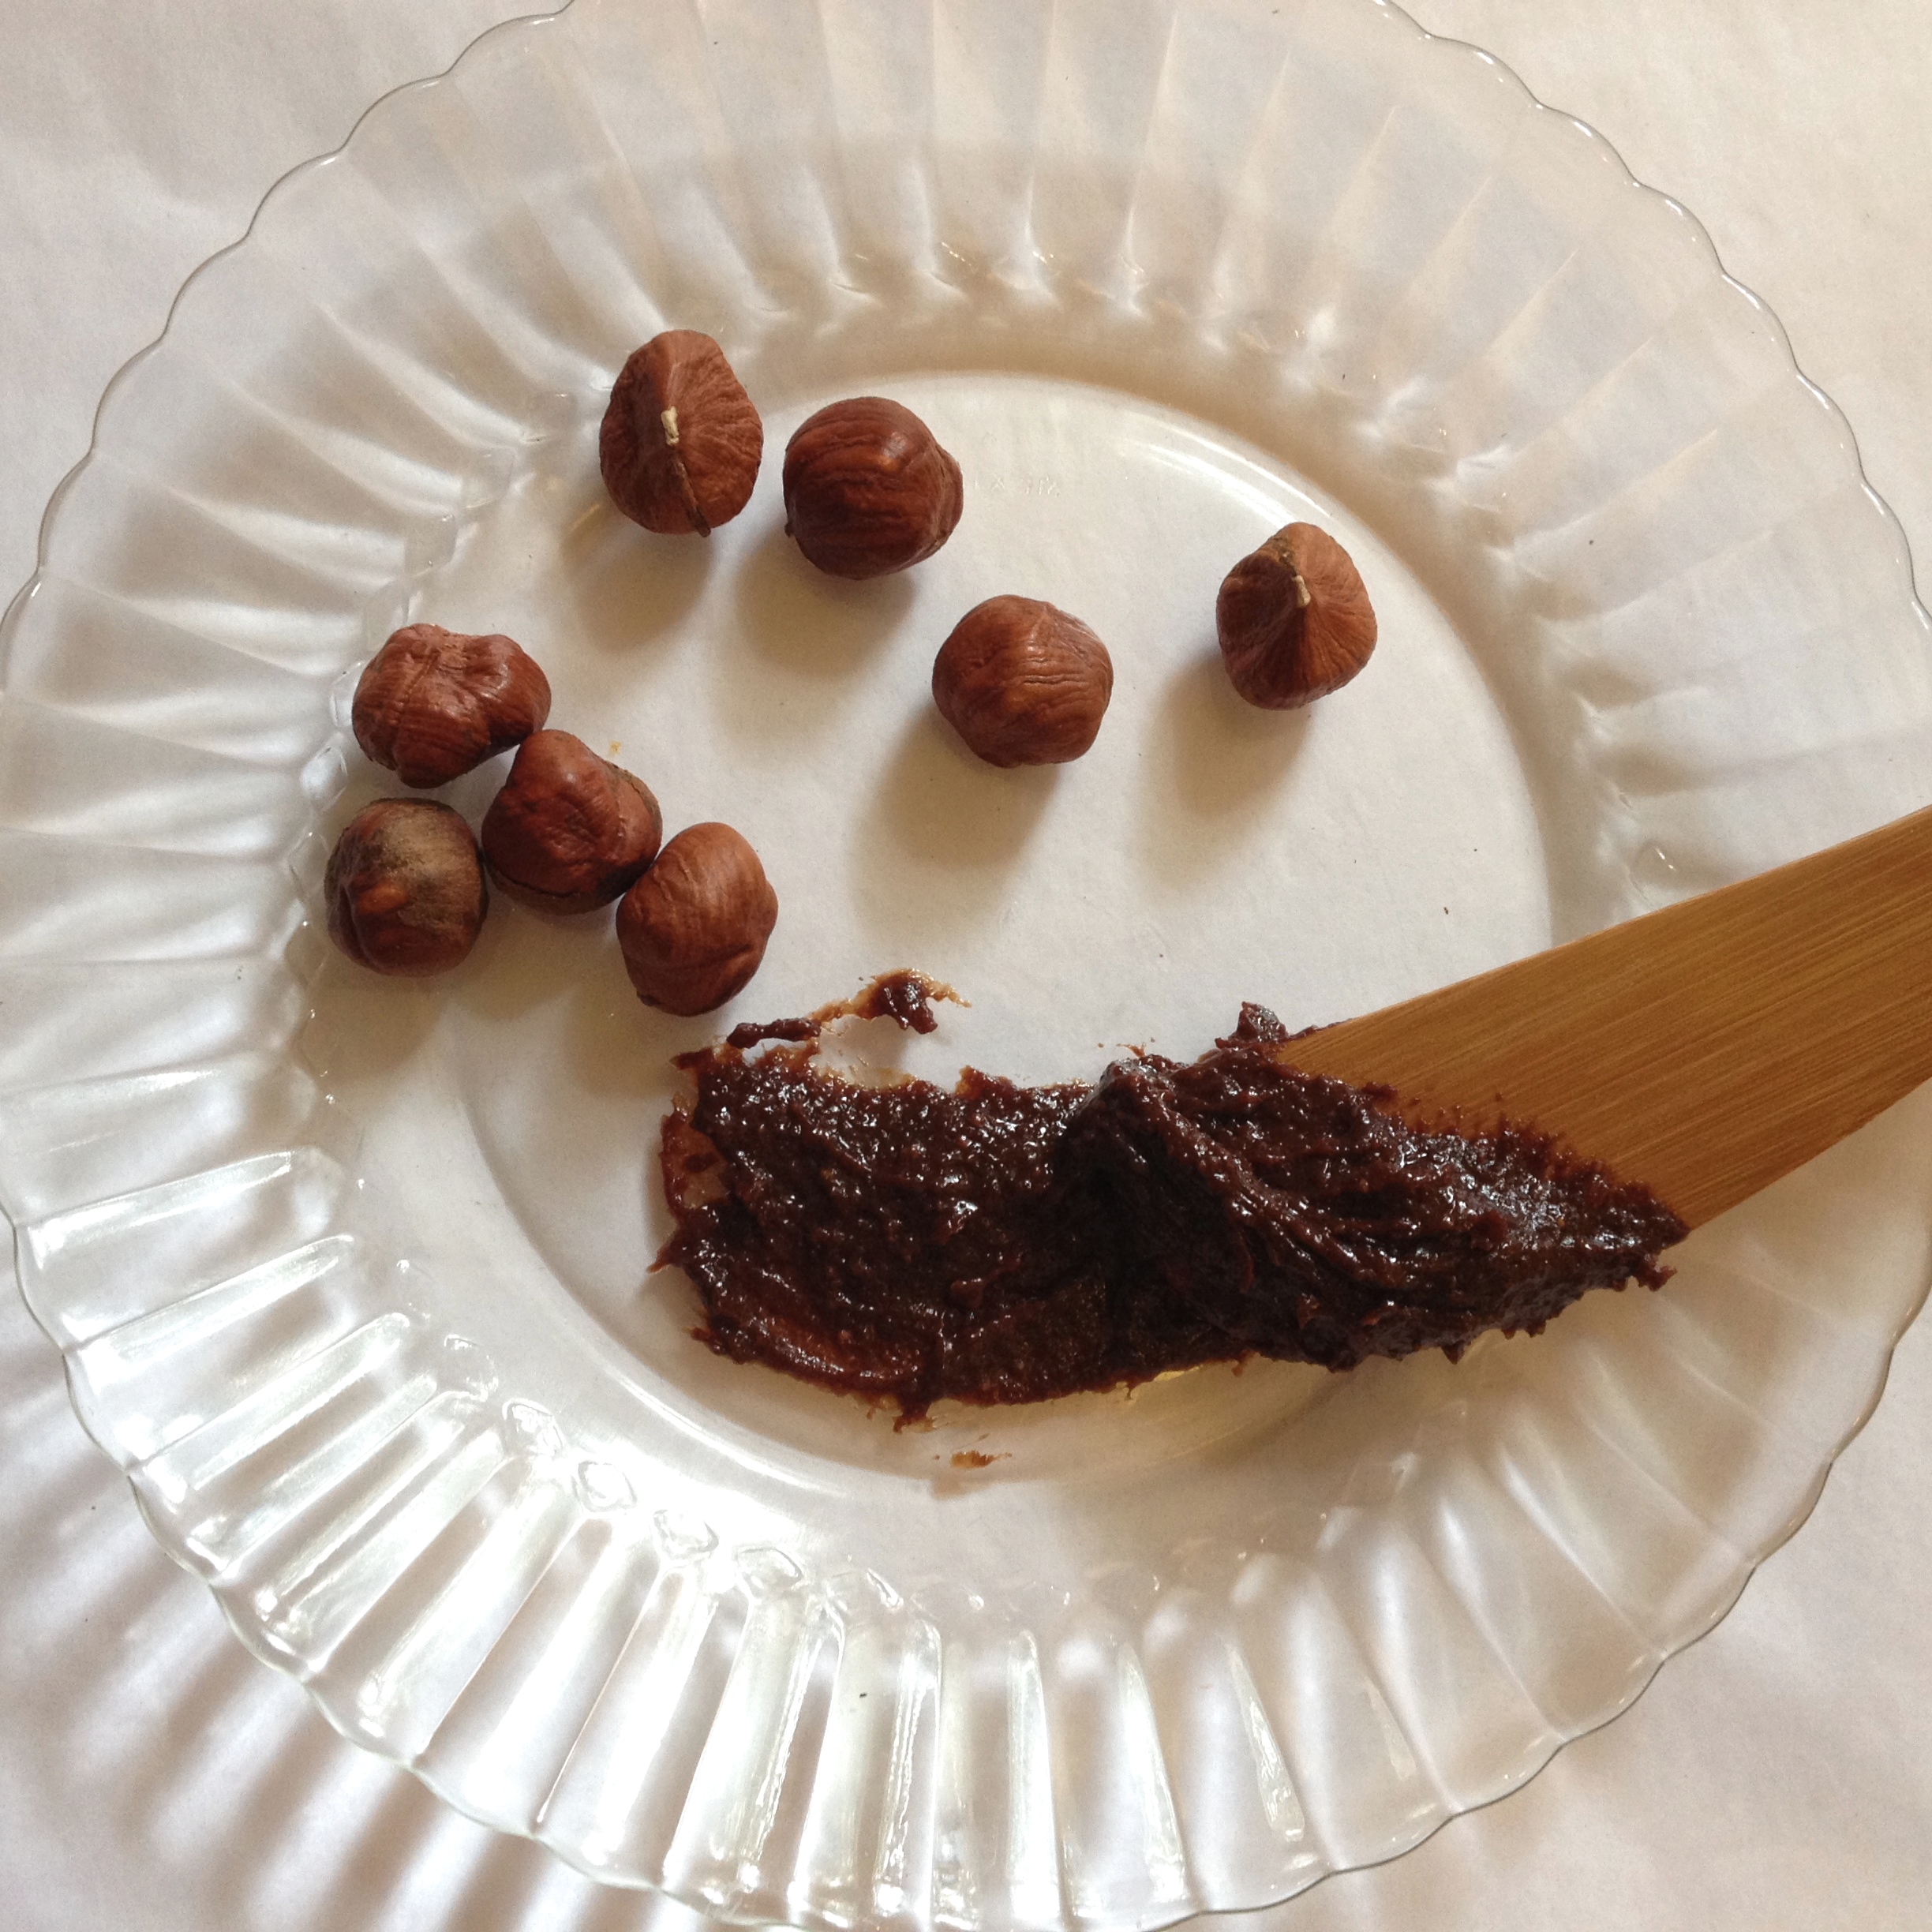 Chocolate Hazelnut Spread